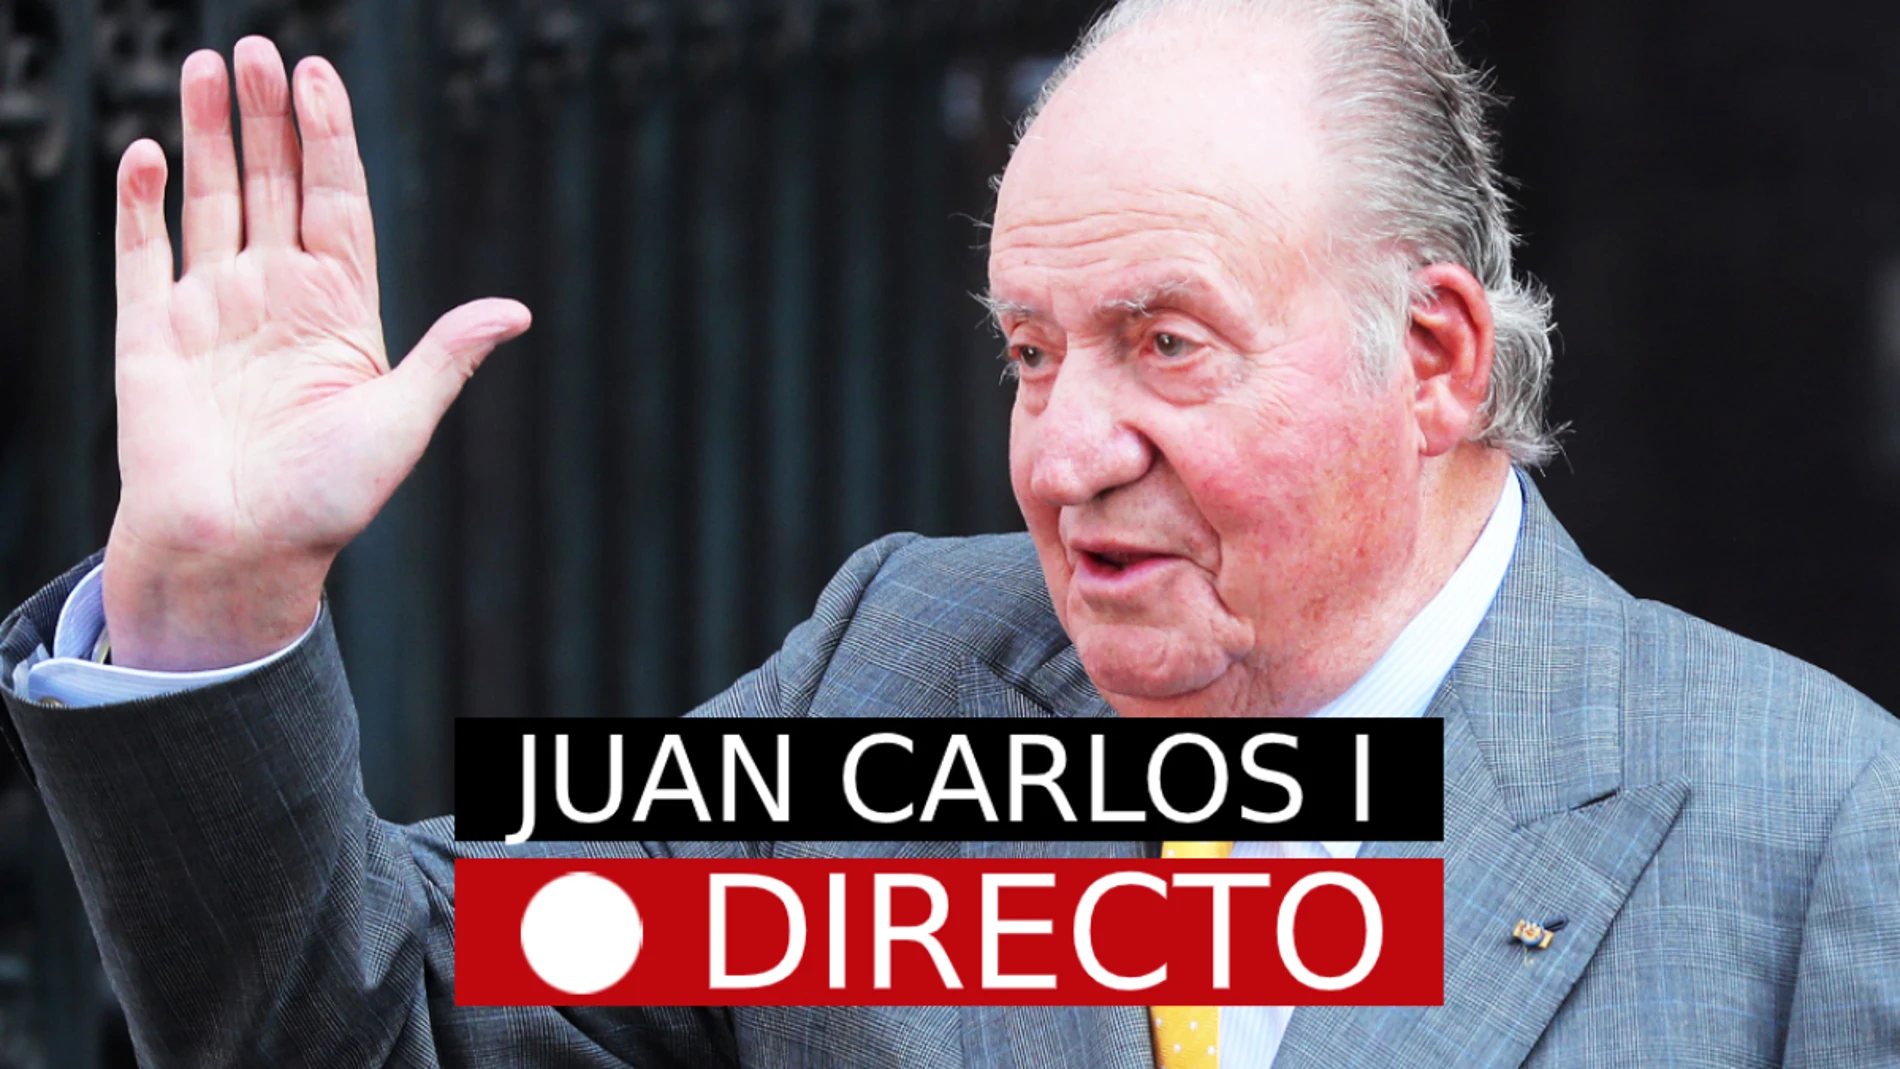 El rey emérito Juan Carlos I ya está fuera de España, en directo